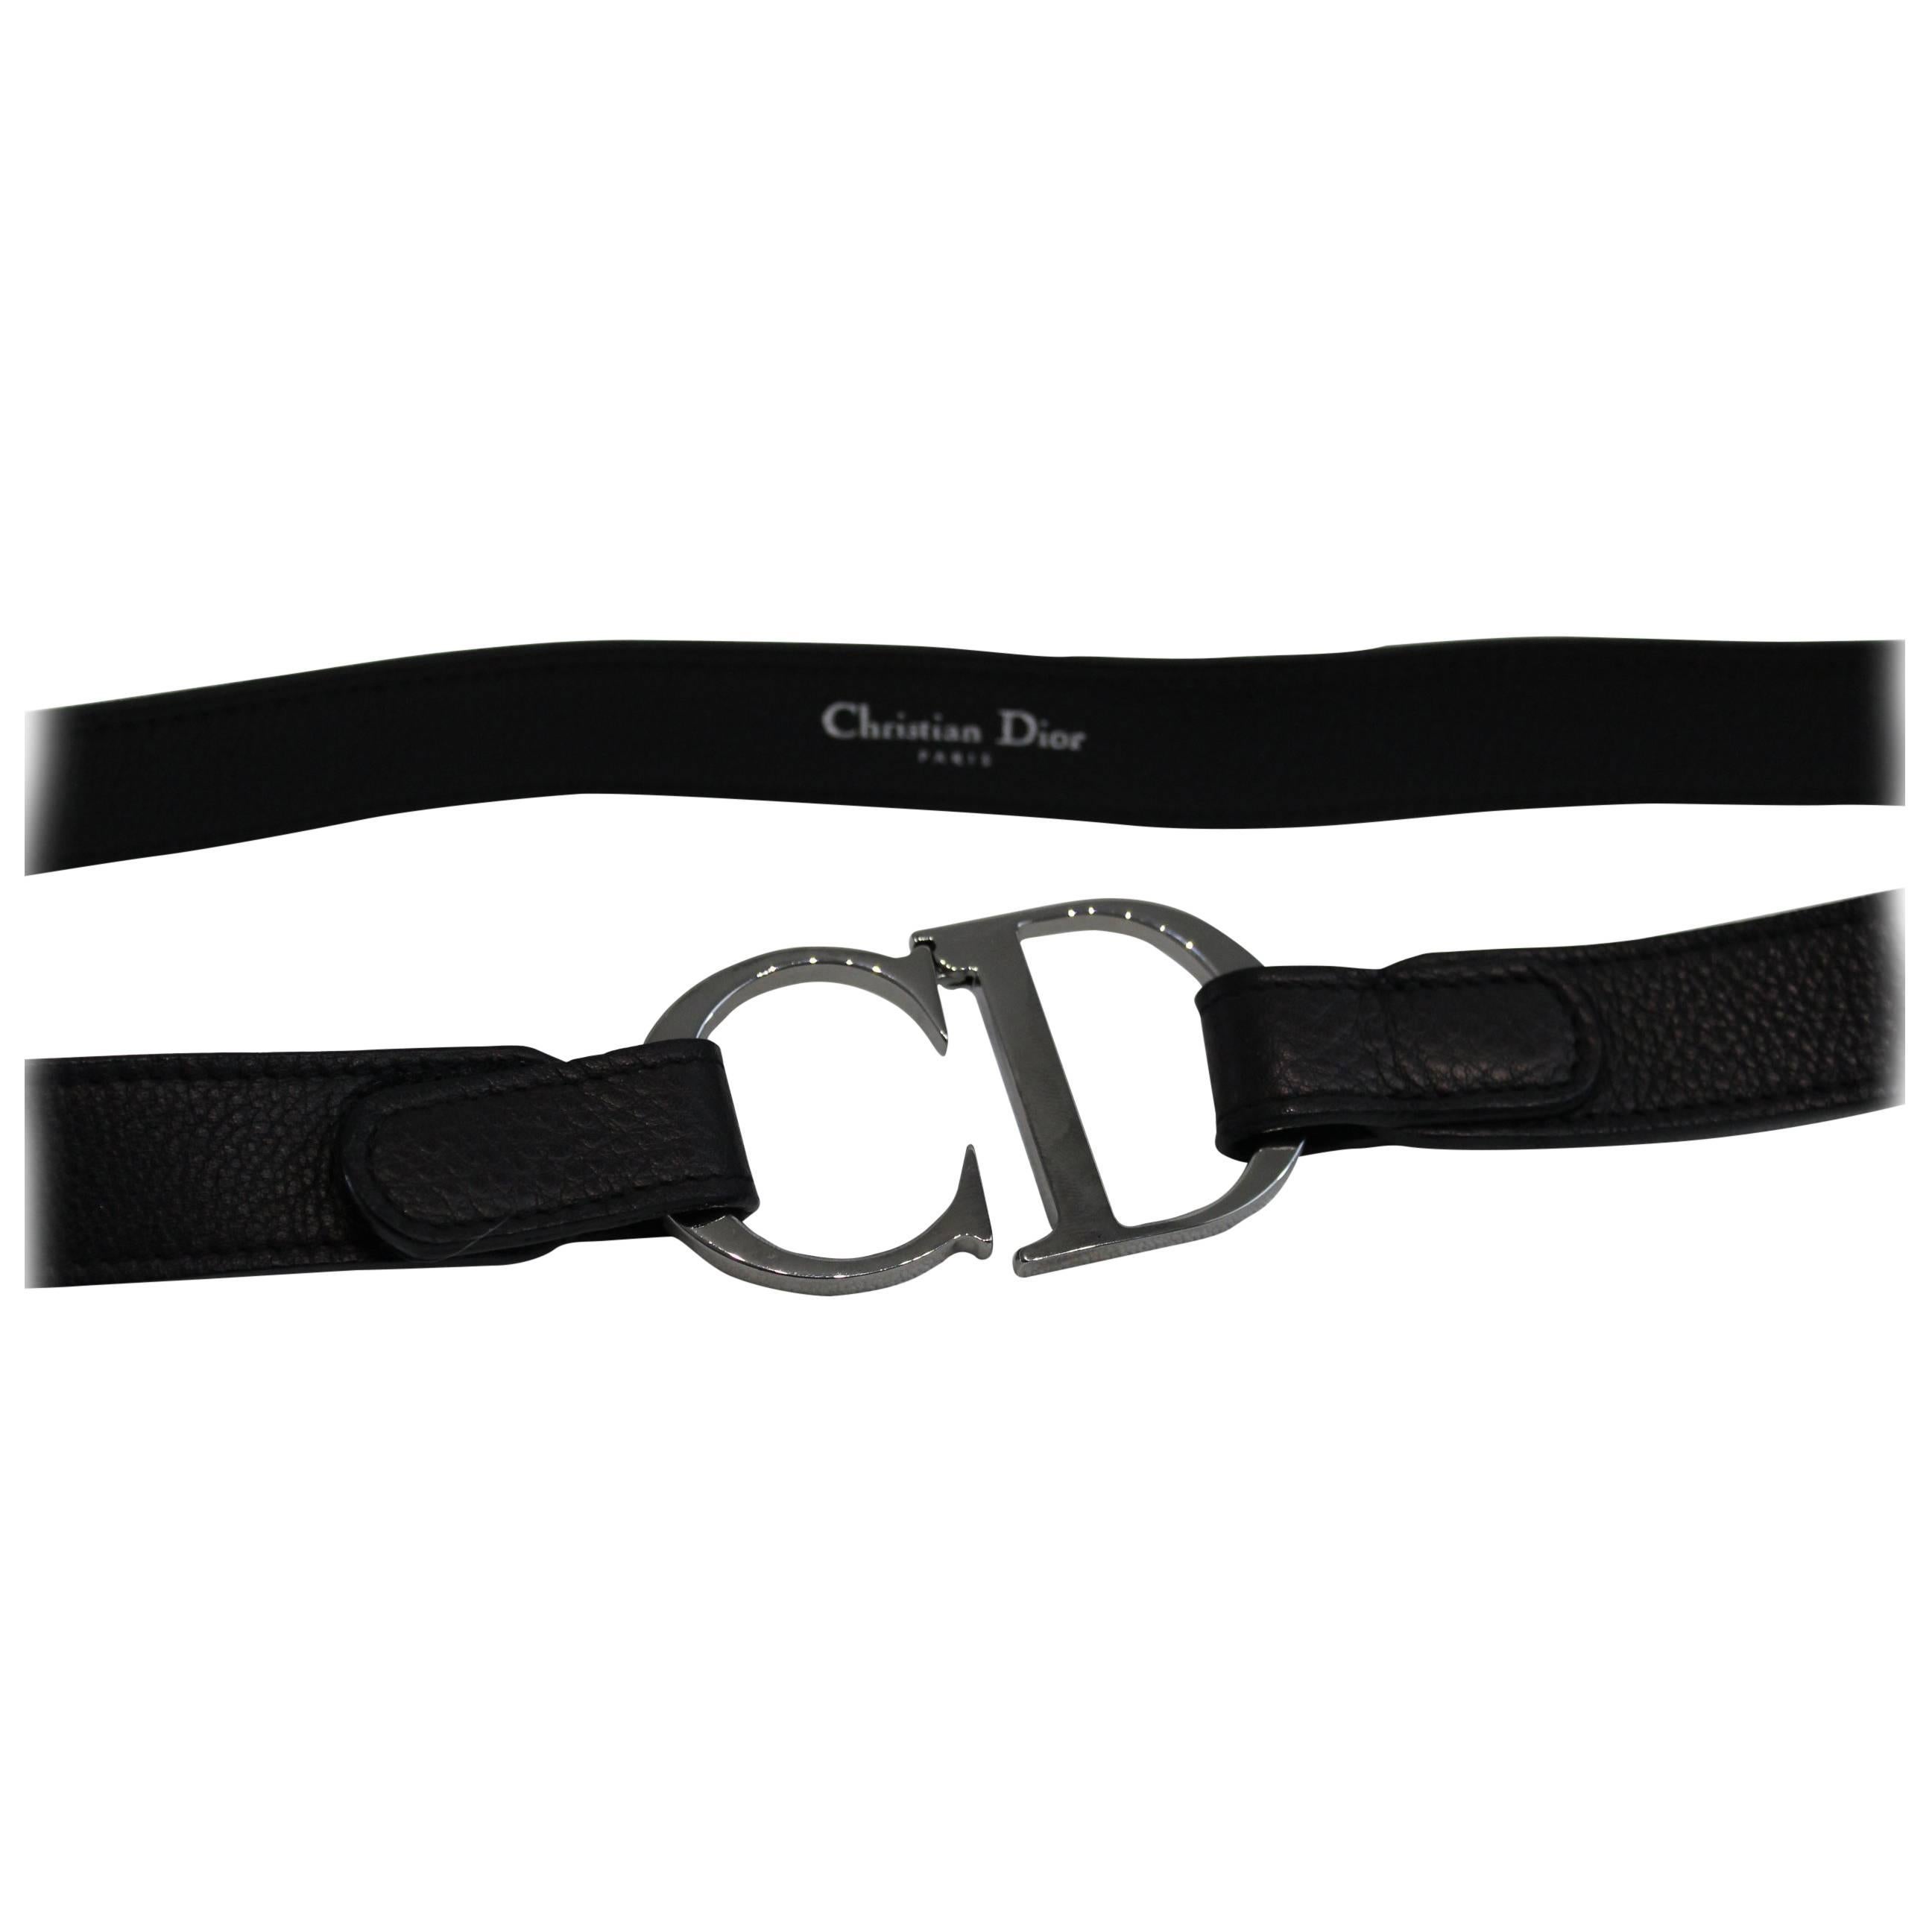 Christian Dior Vintage Stainlees steel belt